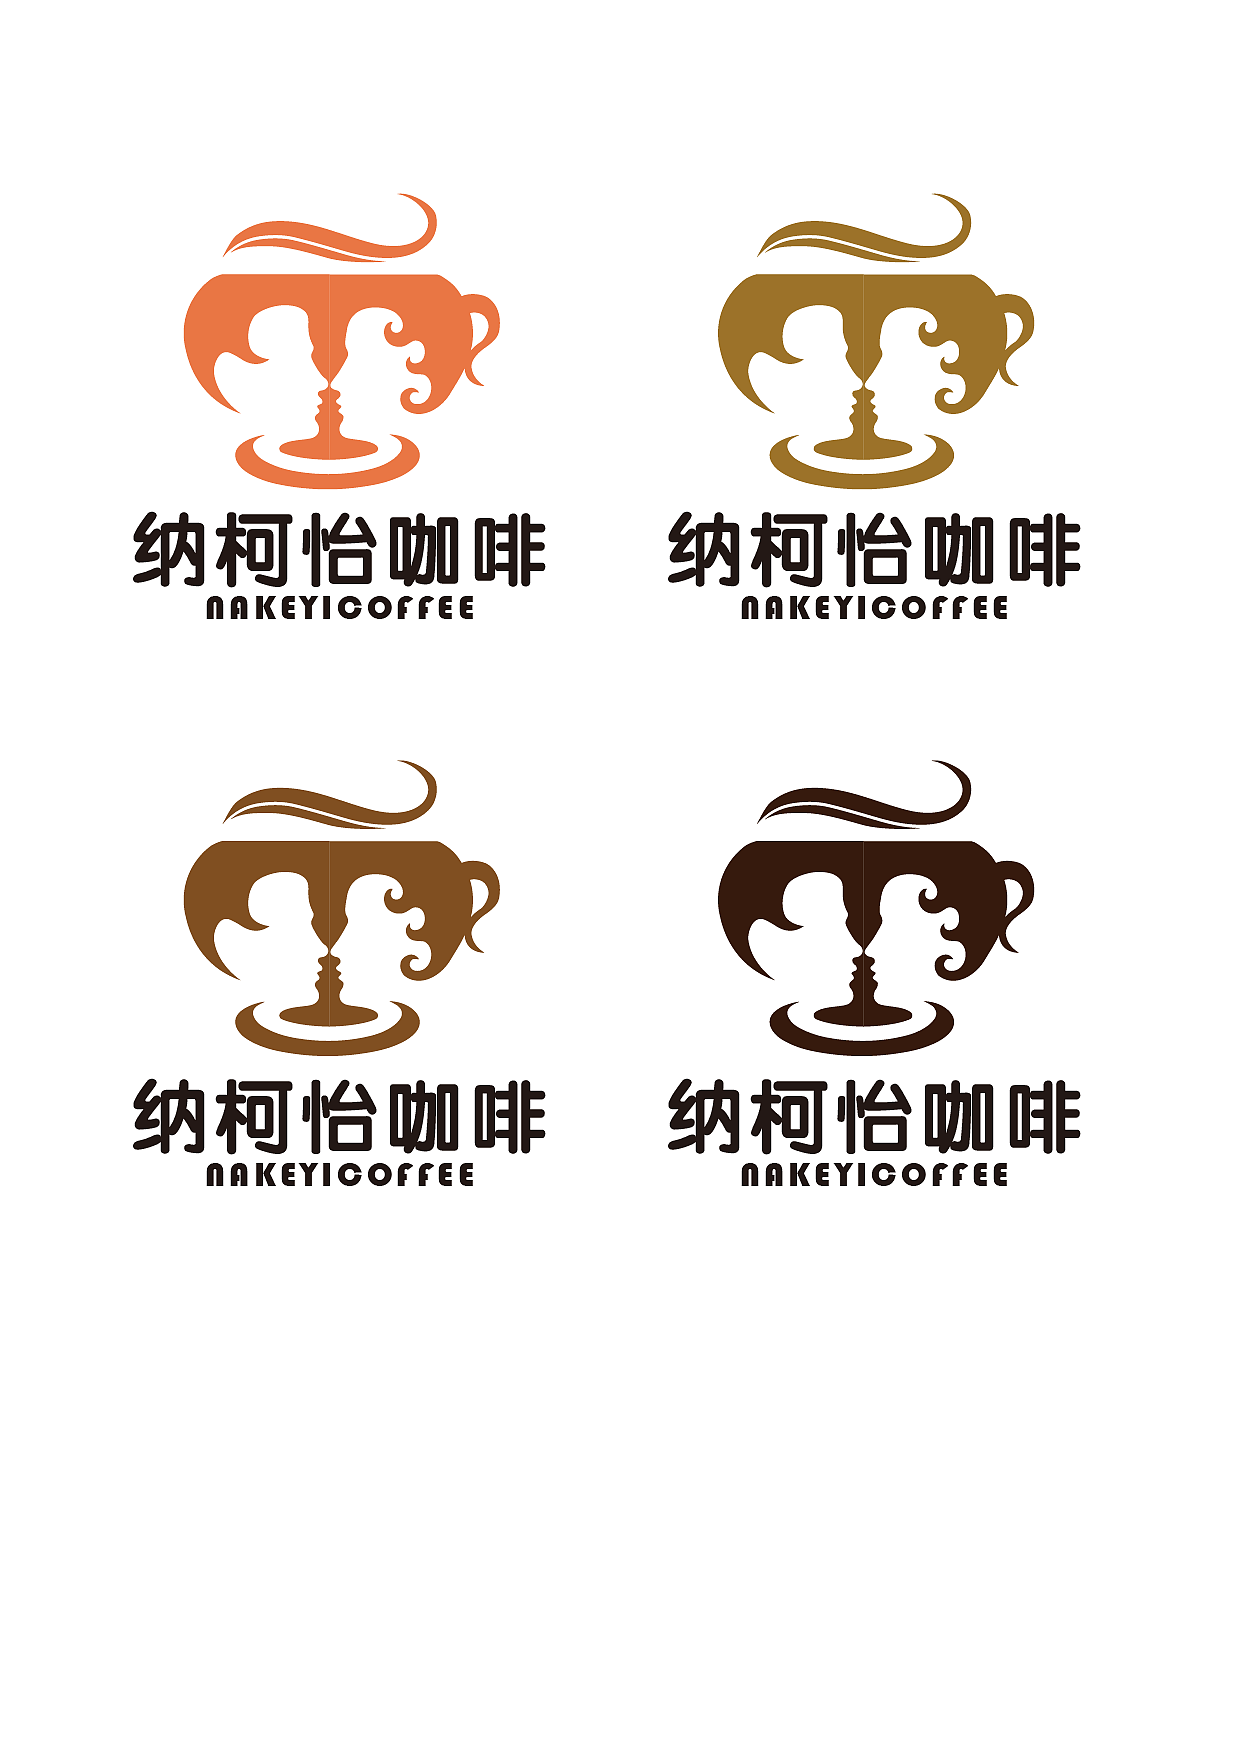 咖啡厅标志(logo)设计